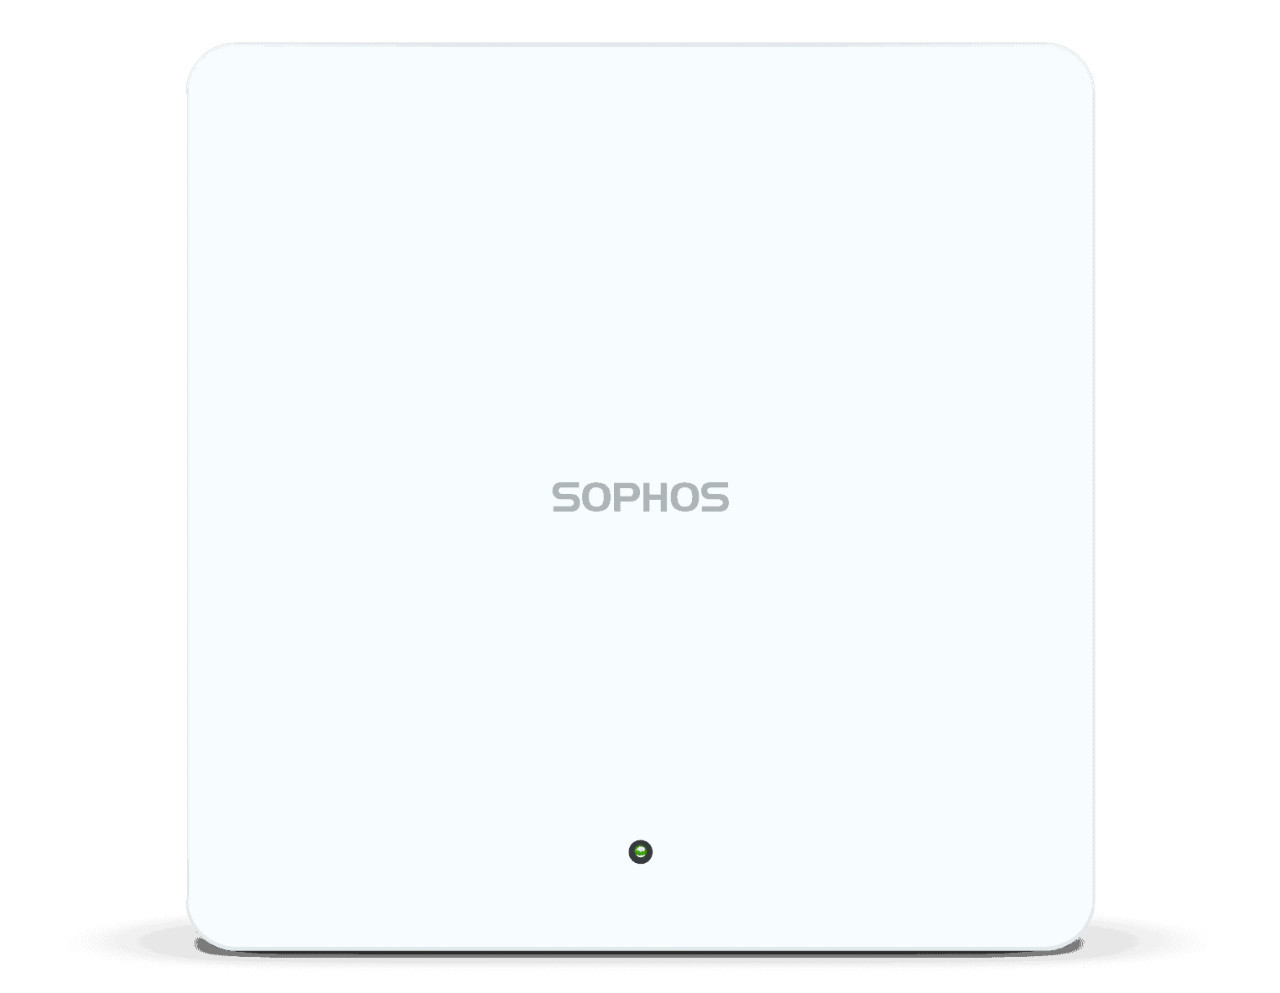 Sophos AP6 840E Access Point